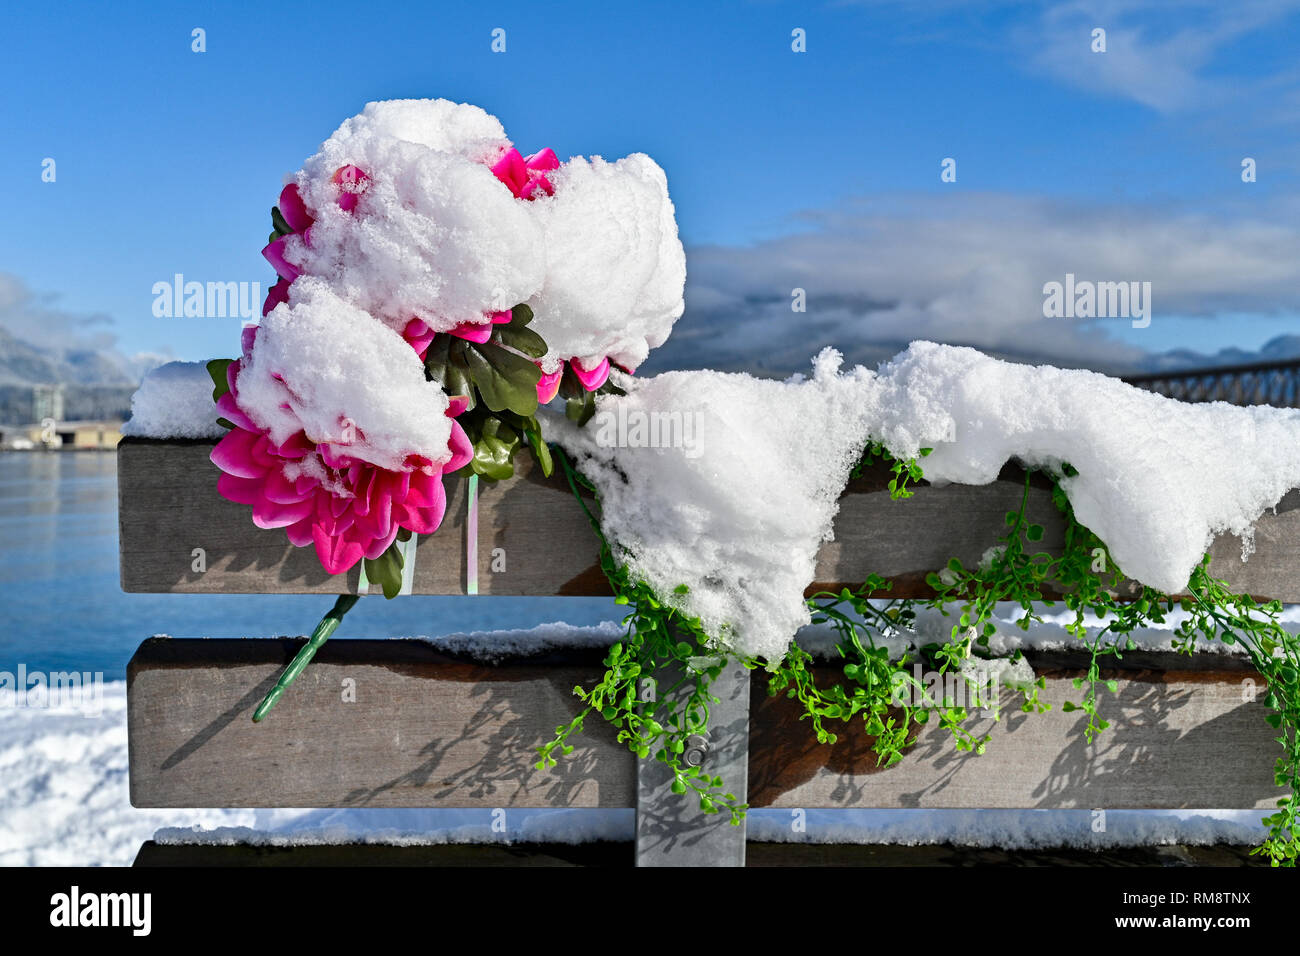 Fleurs en plastique memorial on park bench with snow Banque D'Images